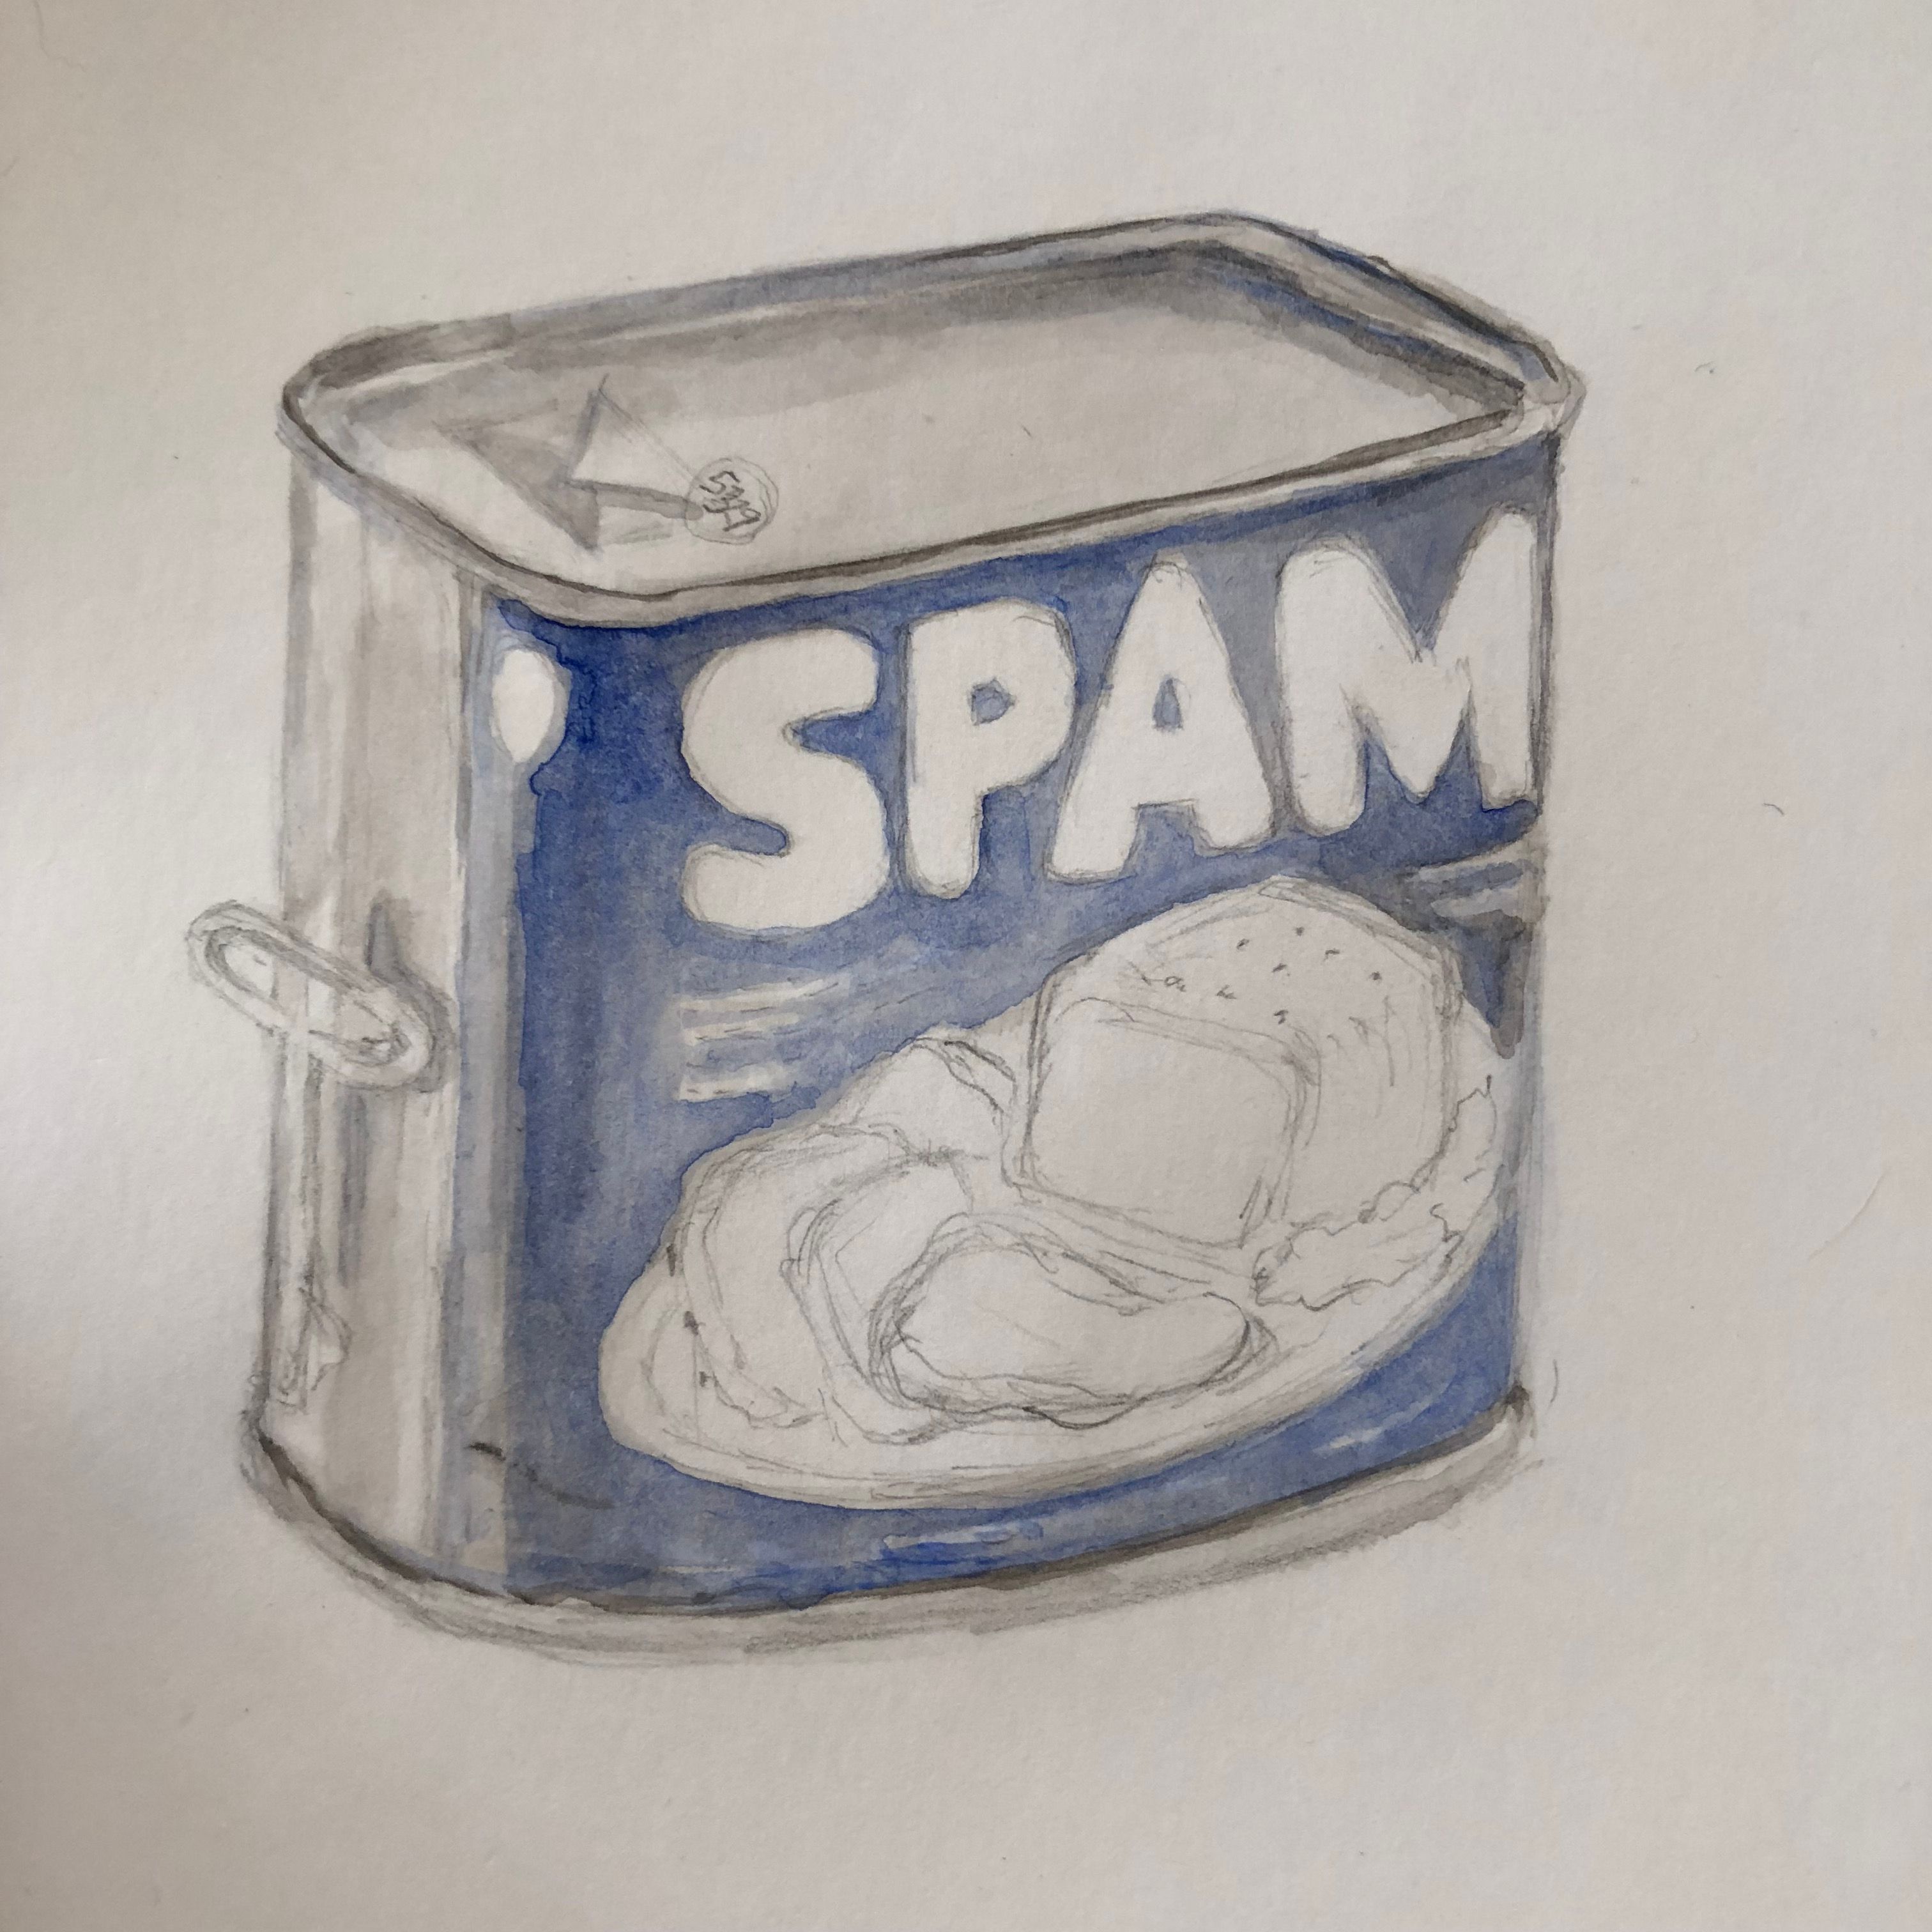 Spam | Monty Python Wiki | Fandom